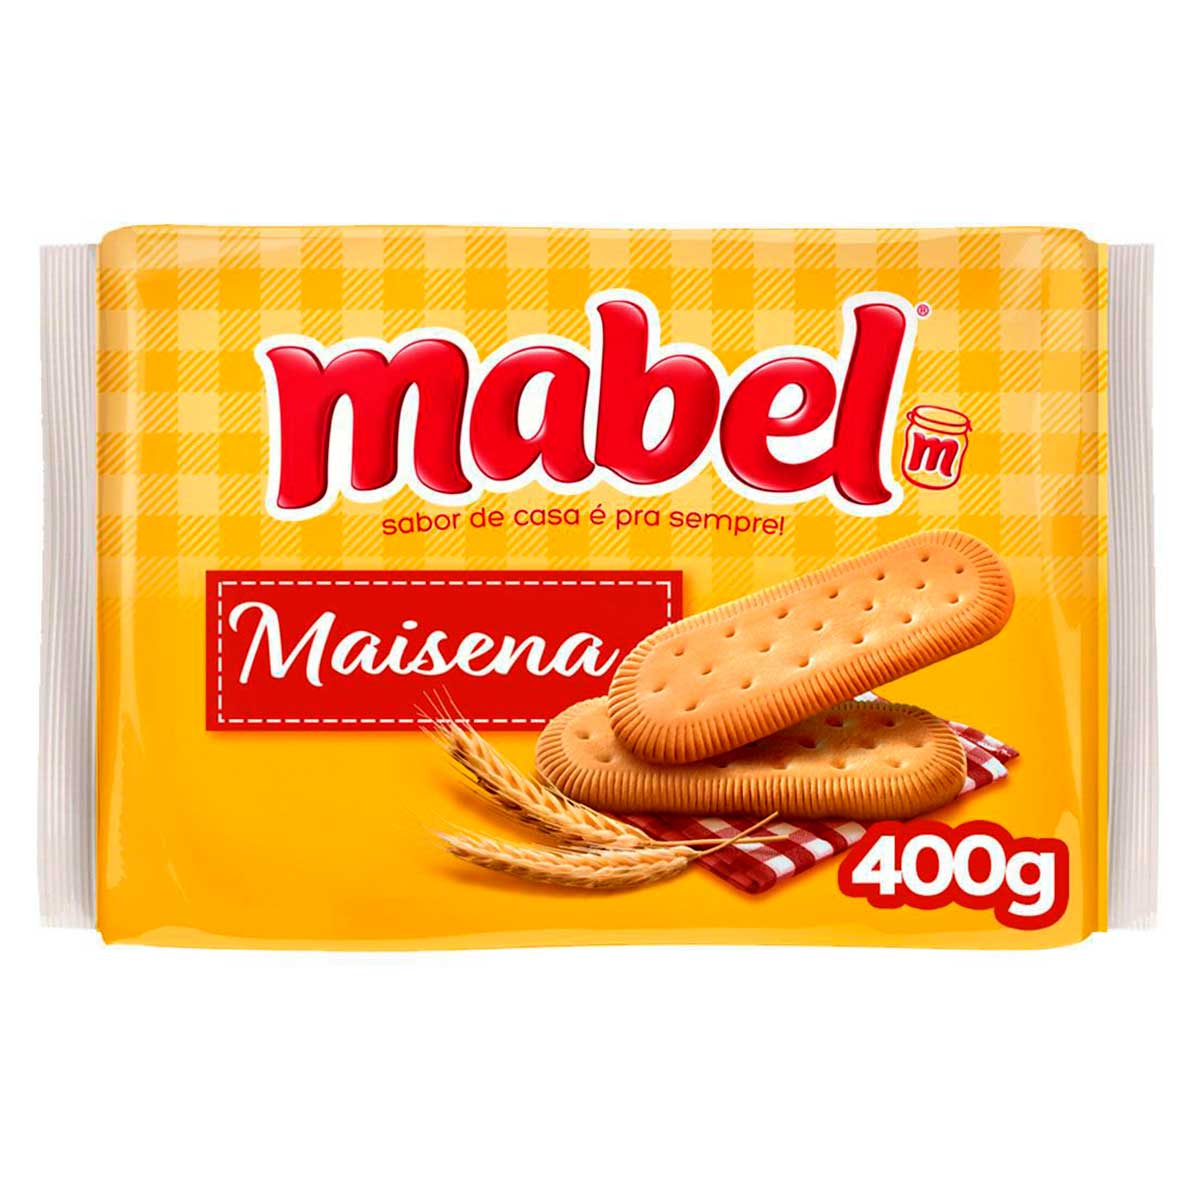 biscoito-de-maizena-mabel-400g-1.jpg